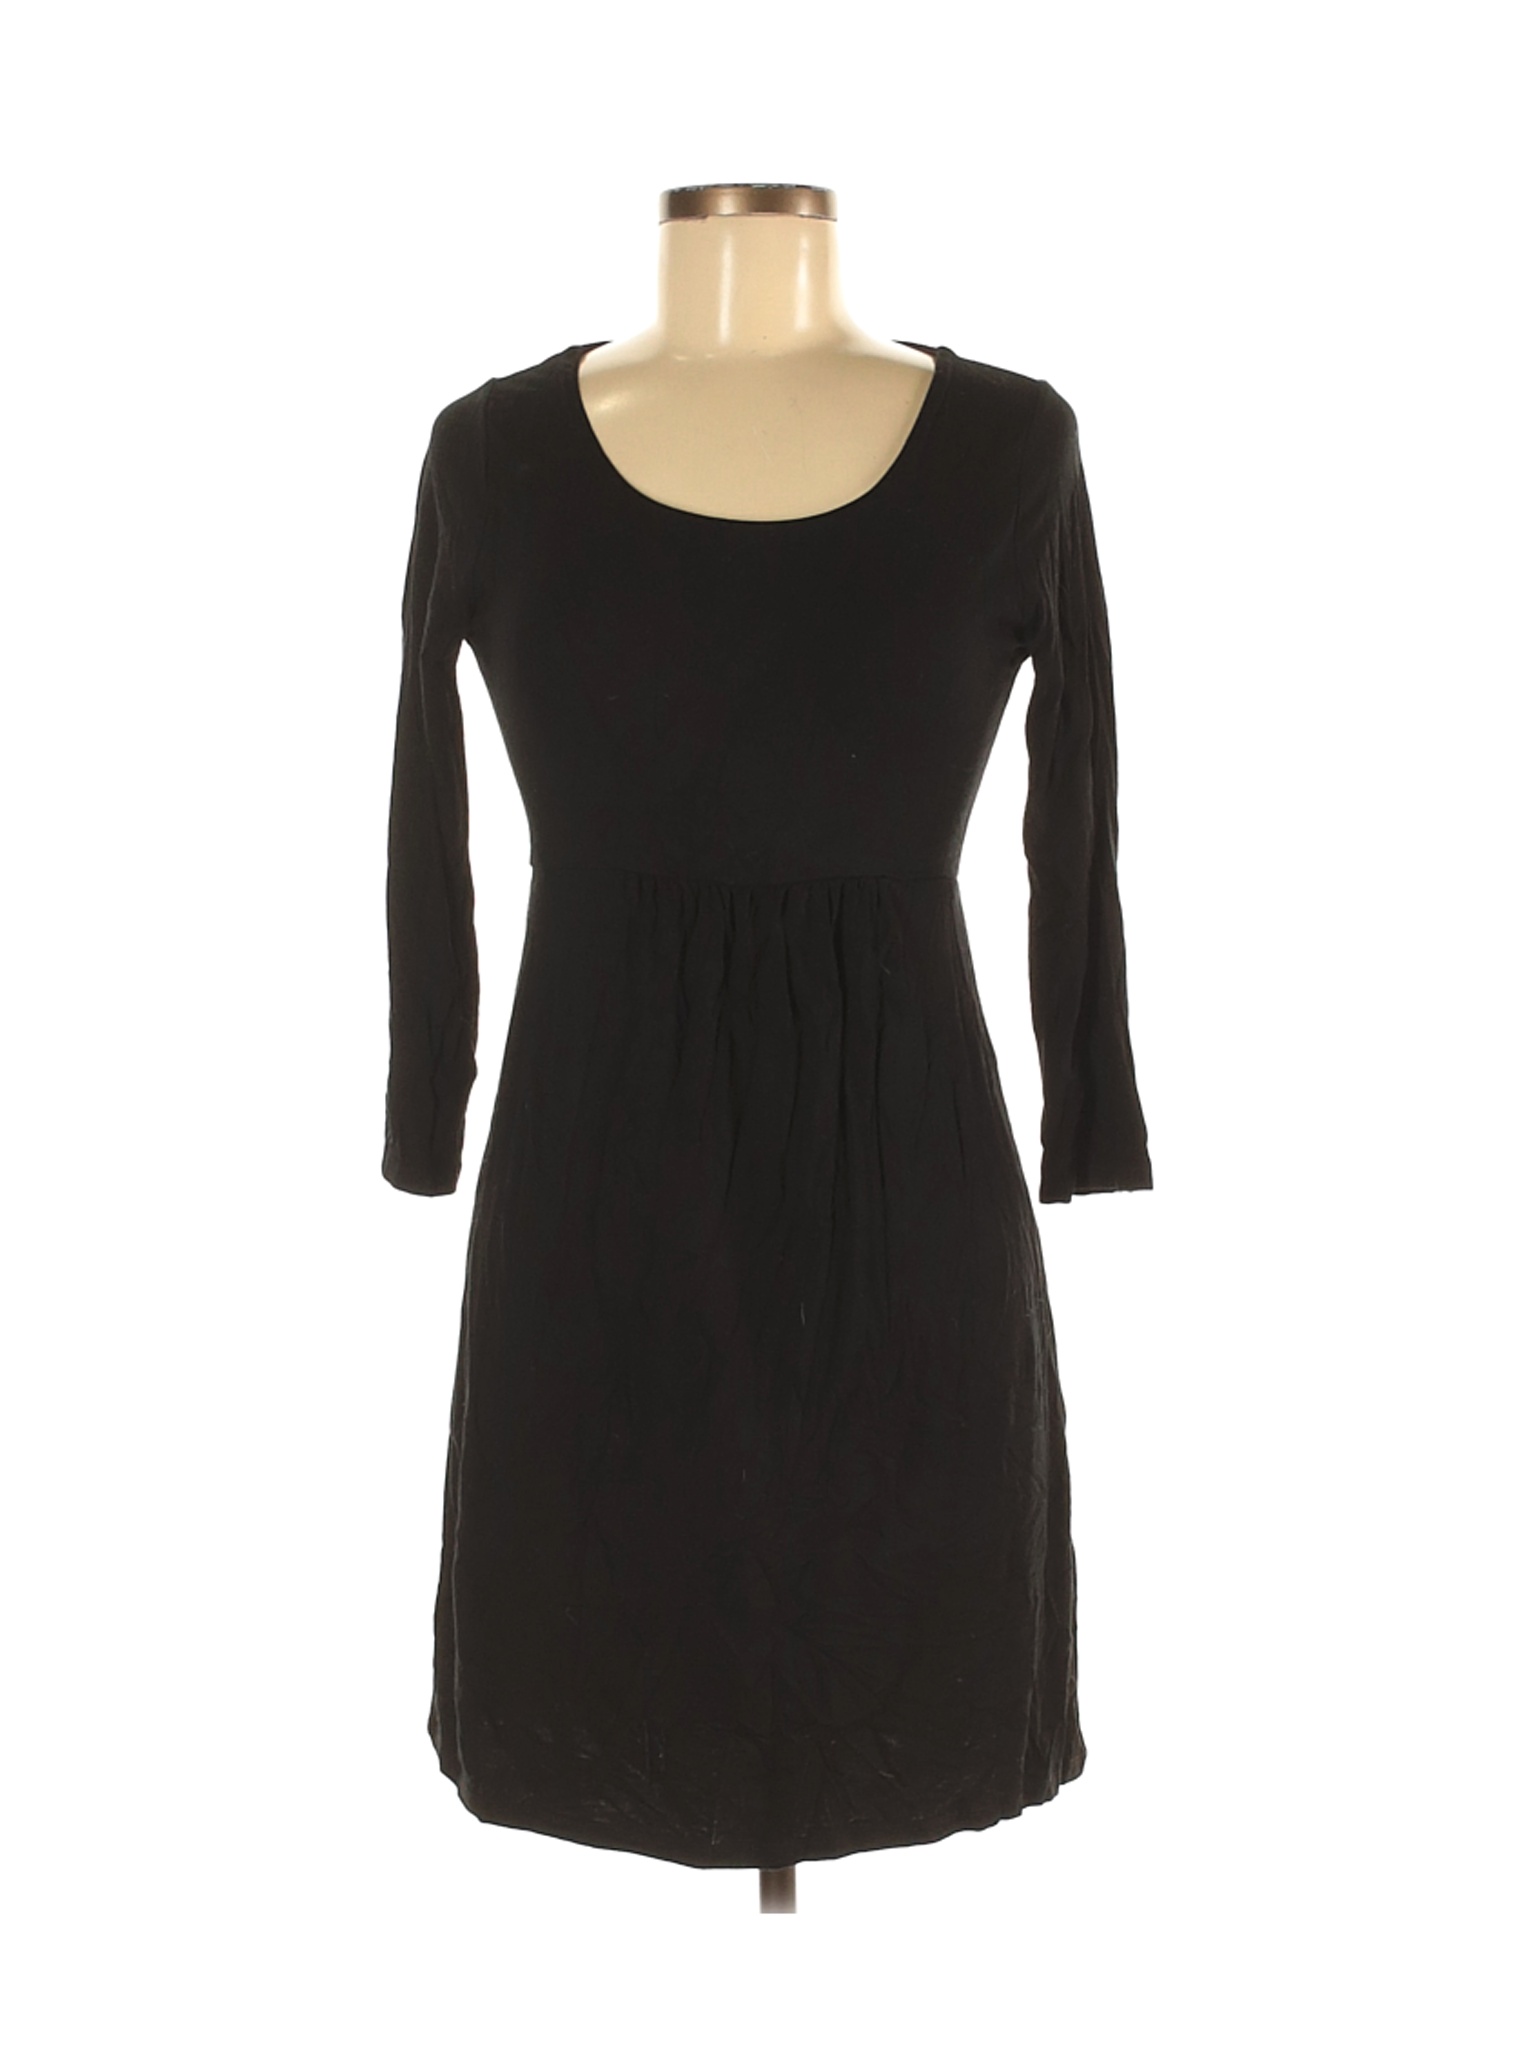 Boden Women Black Casual Dress 6 | eBay